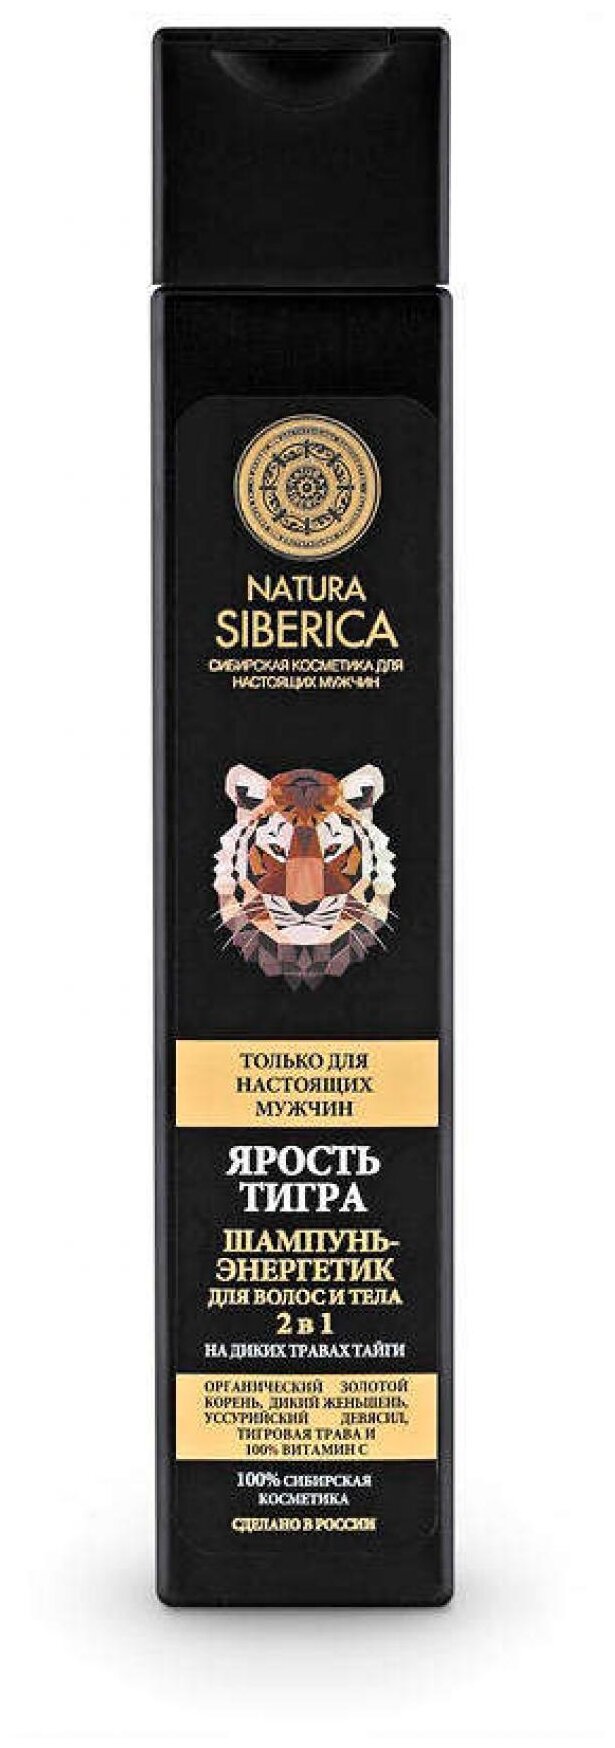 Natura Siberica Шампунь-энергетик для волос и тела 2в1 Ярость тигра